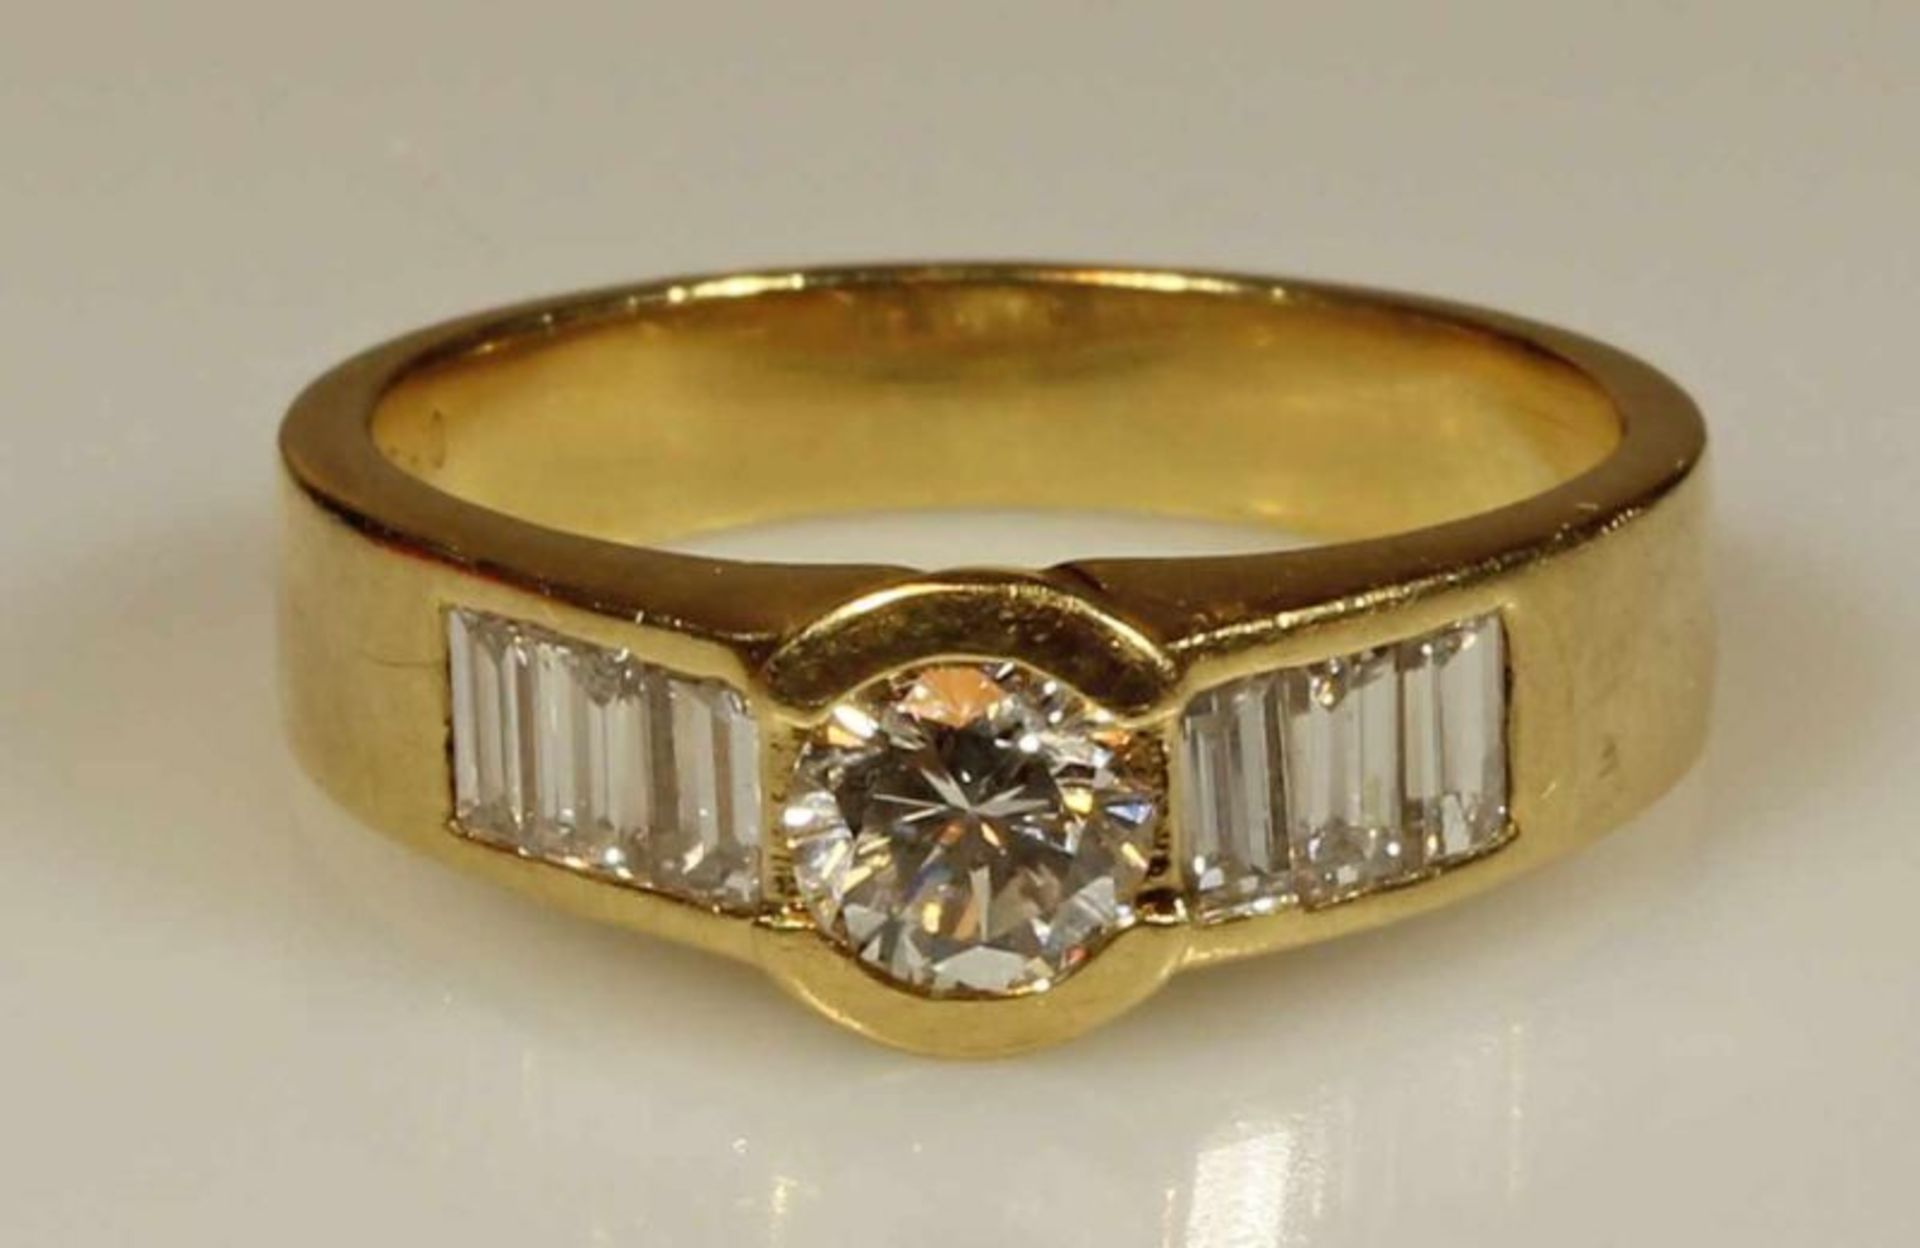 Ring, GG 750, 1 Brillant laut Punzierung 0.59 ct., etwa tw/vsi, 6 Diamantbaguettes zus. laut